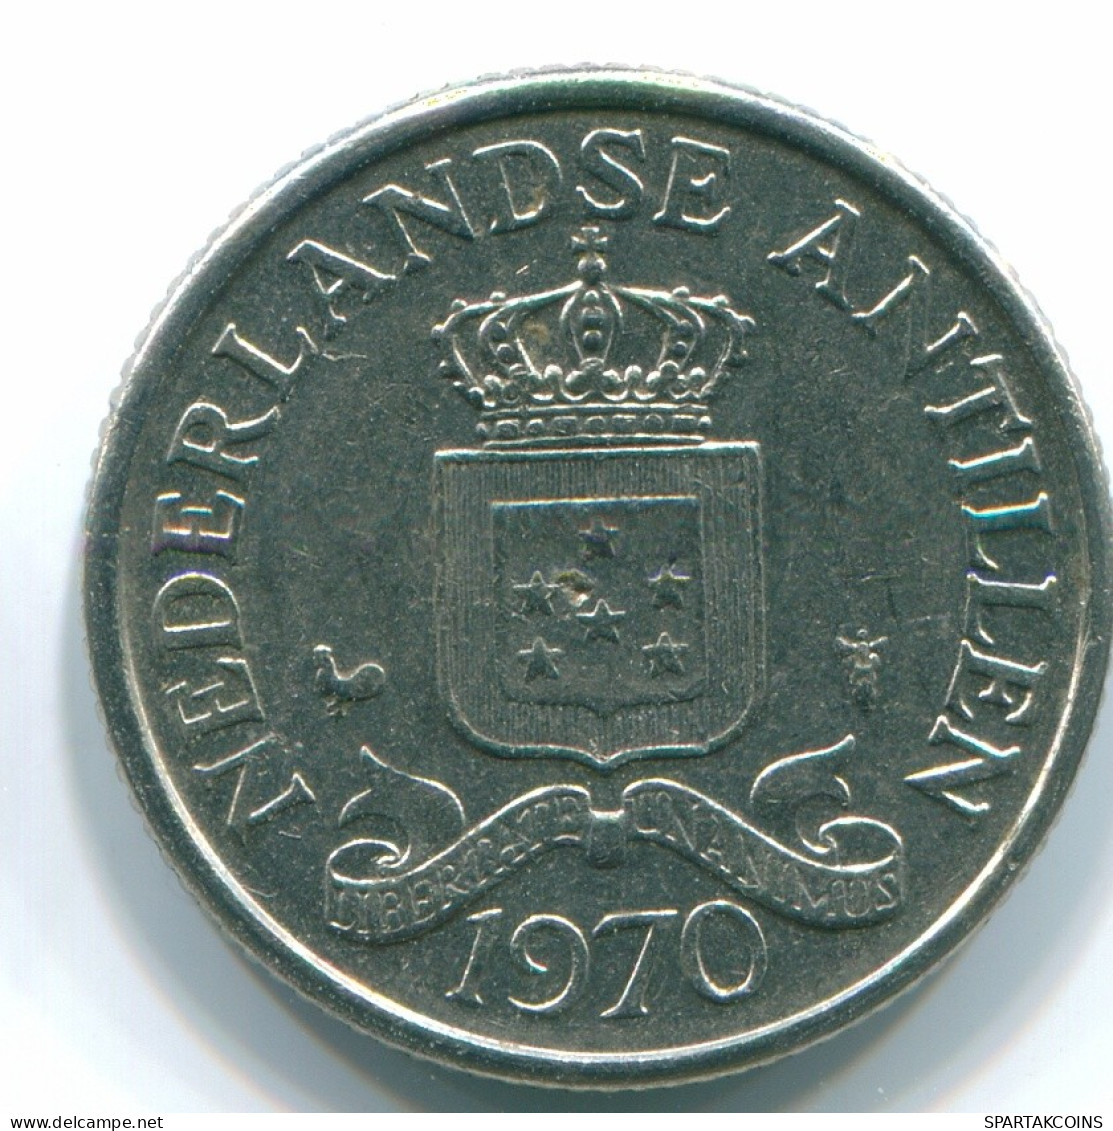 25 CENTS 1970 NIEDERLÄNDISCHE ANTILLEN Nickel Koloniale Münze #S11447.D.A - Antilles Néerlandaises